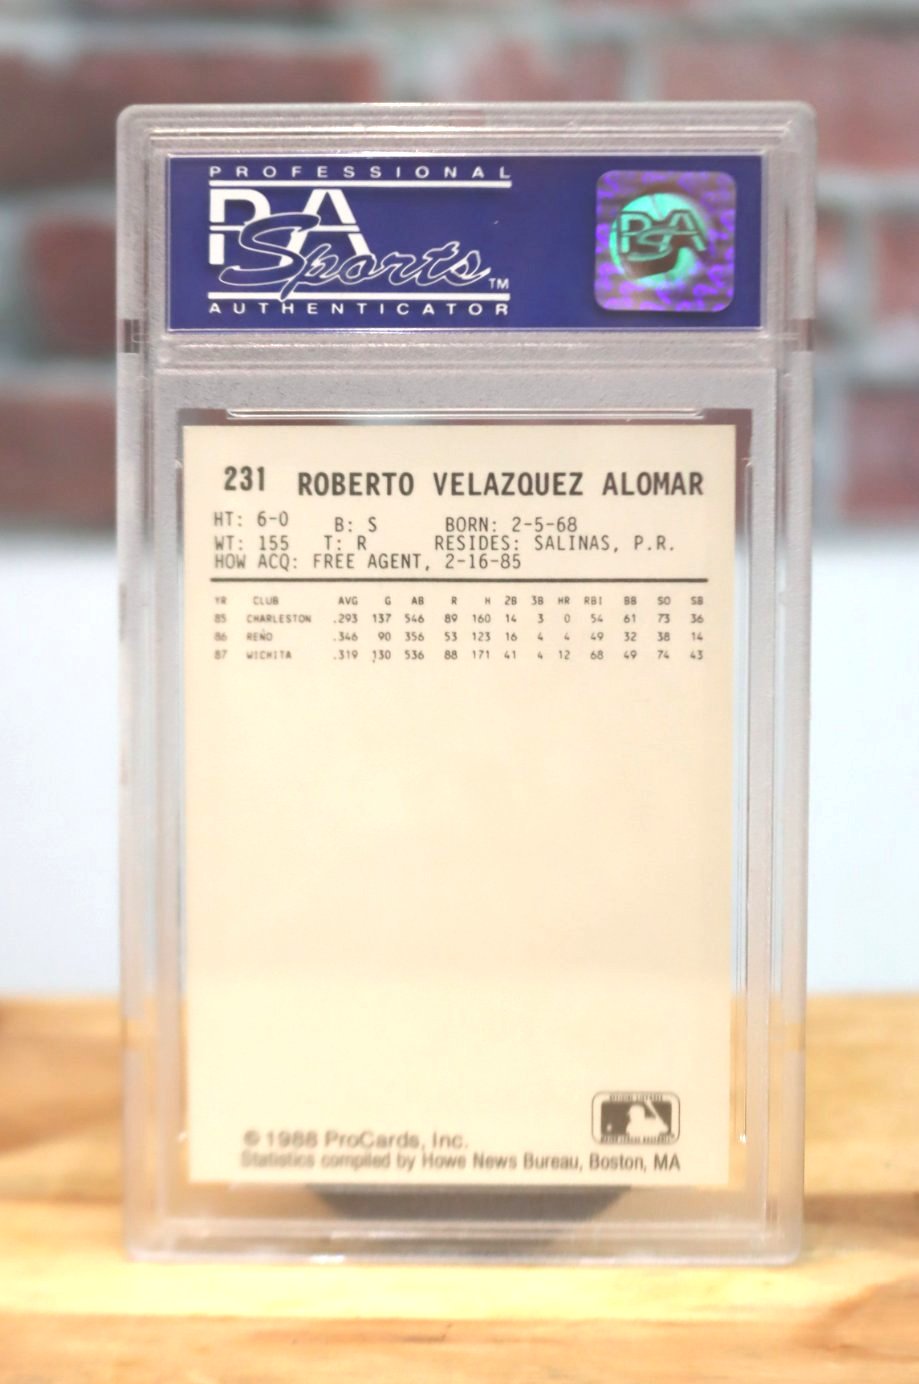 1988 Pro Cards Roberto Almomar Minor League Rookie Card PSA 9